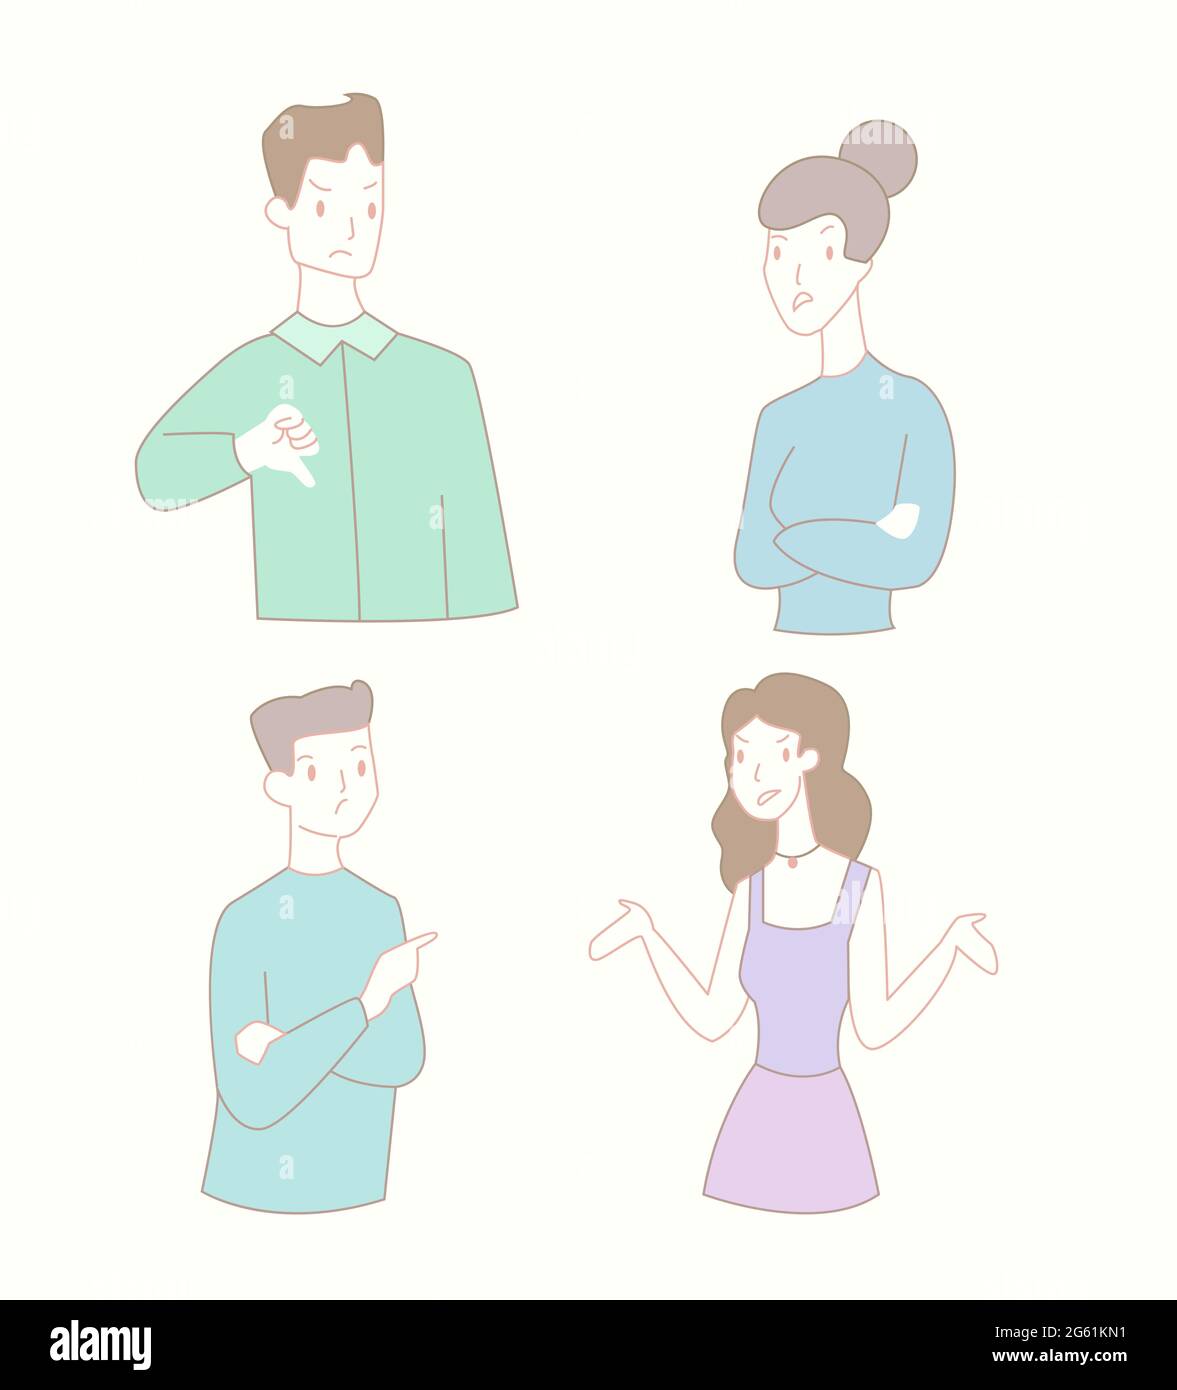 Mann und Frau Beziehungskonflikt flache Vektor-Illustration. Charaktere, Menschen streiten sich über das Konzept Stock Vektor